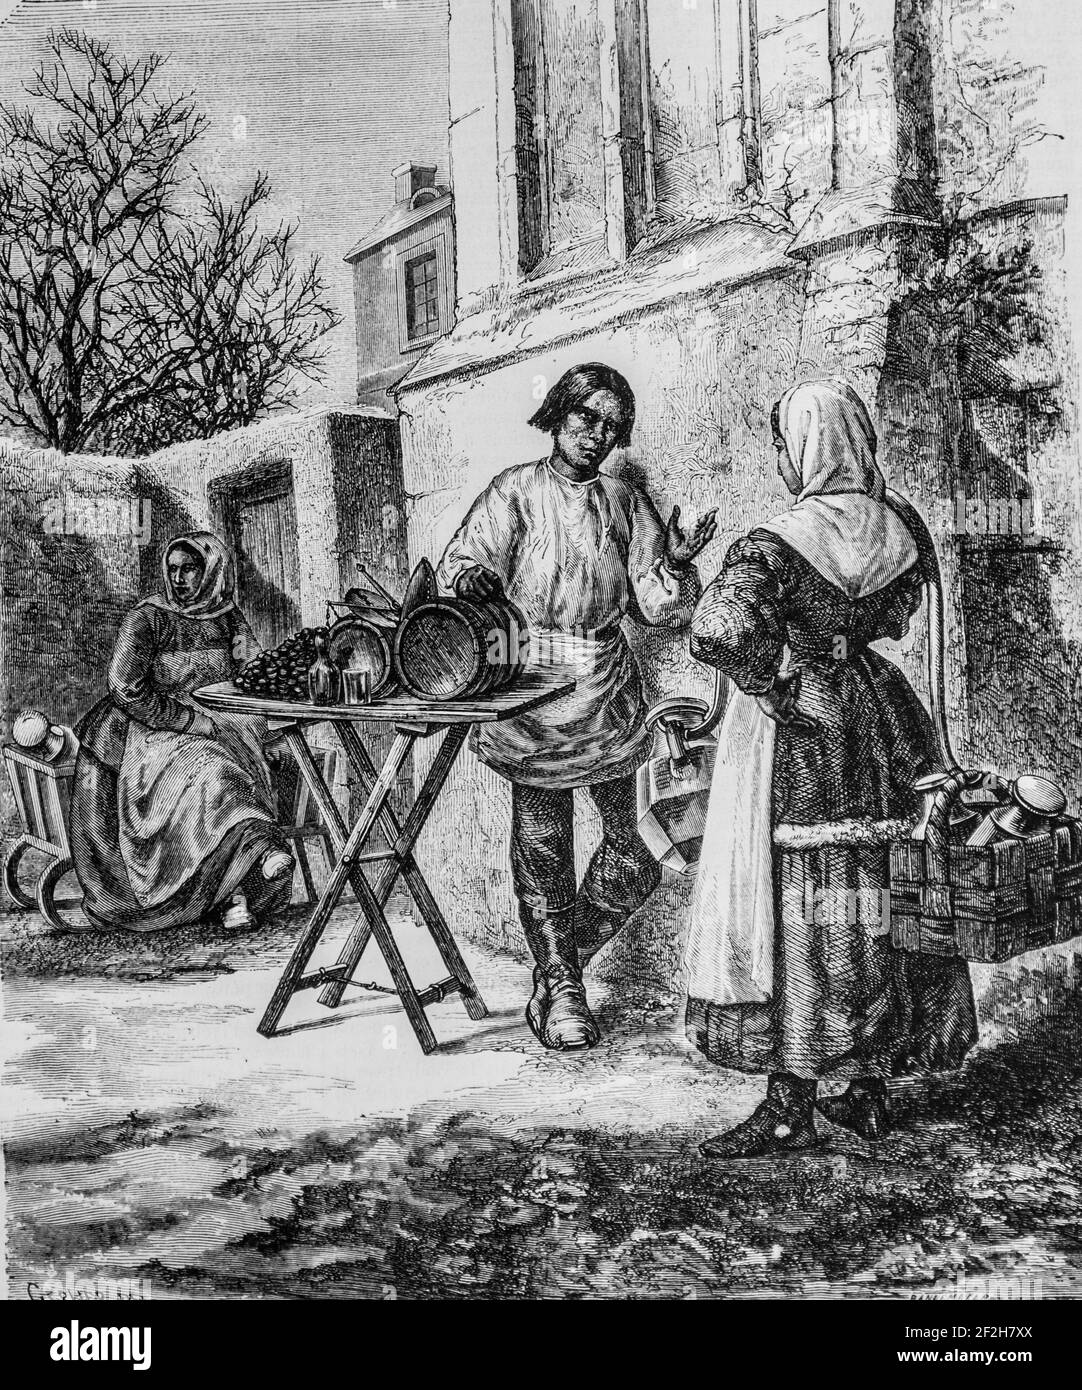 laitiere marchand de pruneaux en russie, nouvelle encyclopedie nationale par maurice lachatre,editeur Docks de la lbrairie,1870 Stockfoto